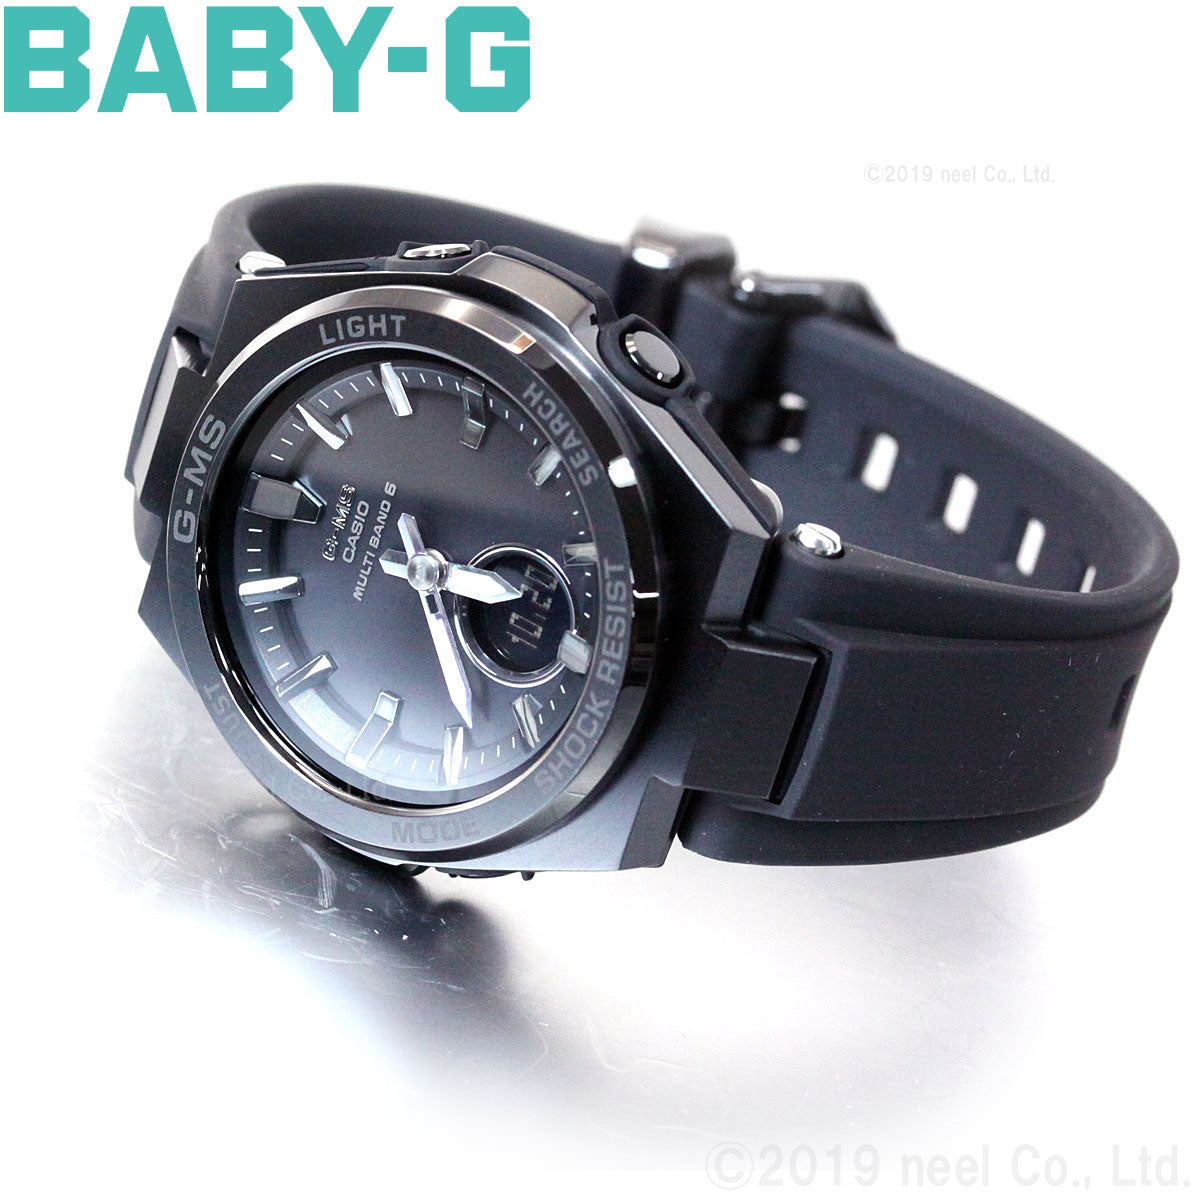 BABY-G カシオ ベビーG レディース G-MS 電波 ソーラー 腕時計 タフソーラー MSG-W200G-1A2JF